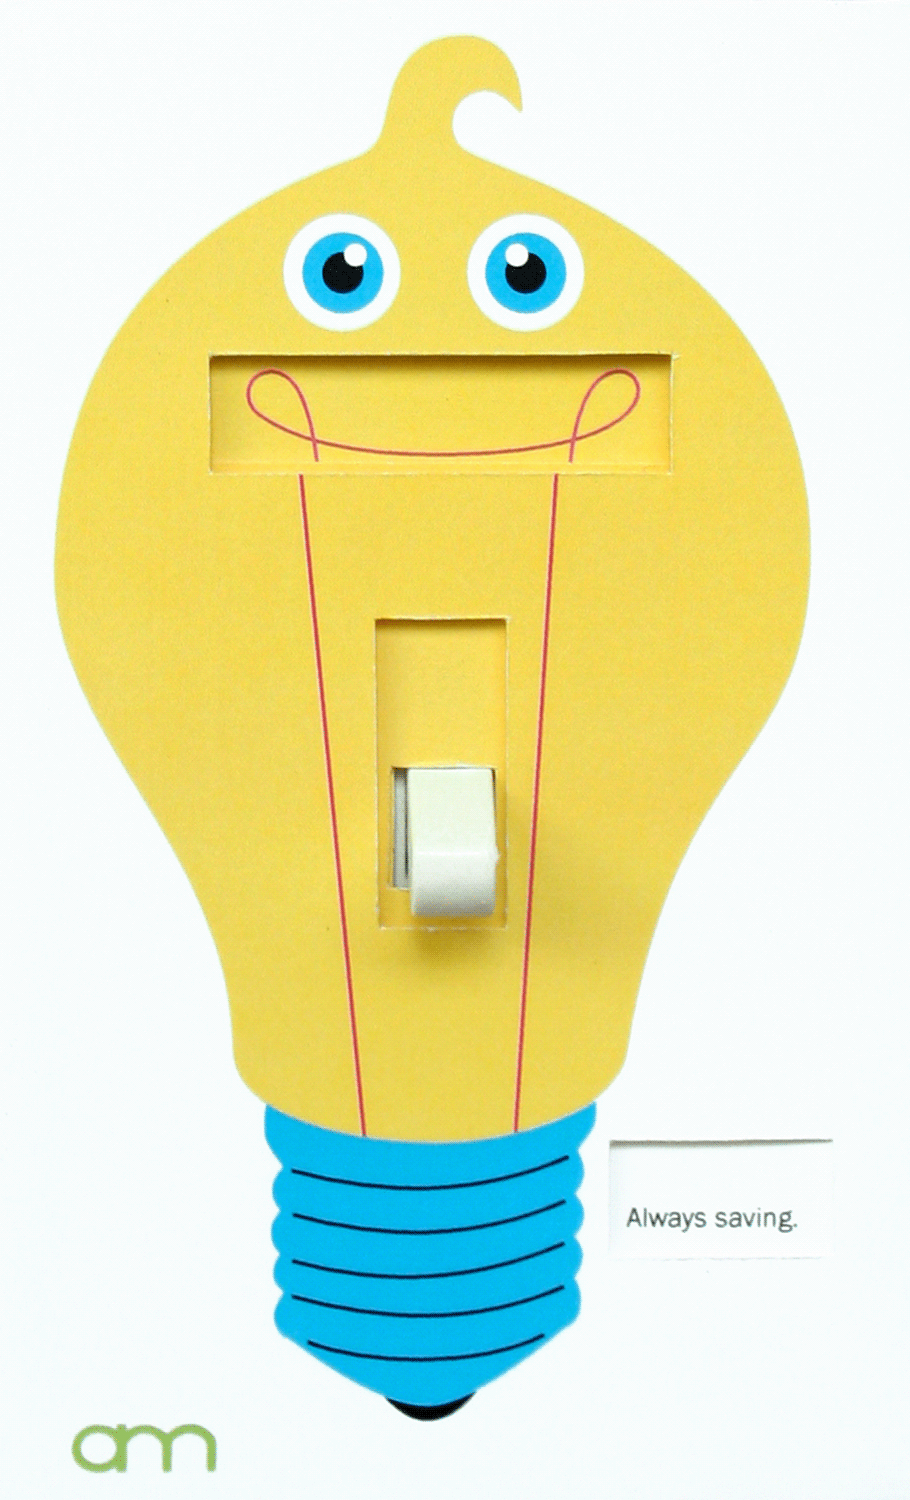 Alabama Power energy conservation Lightbulbs energy efficiency